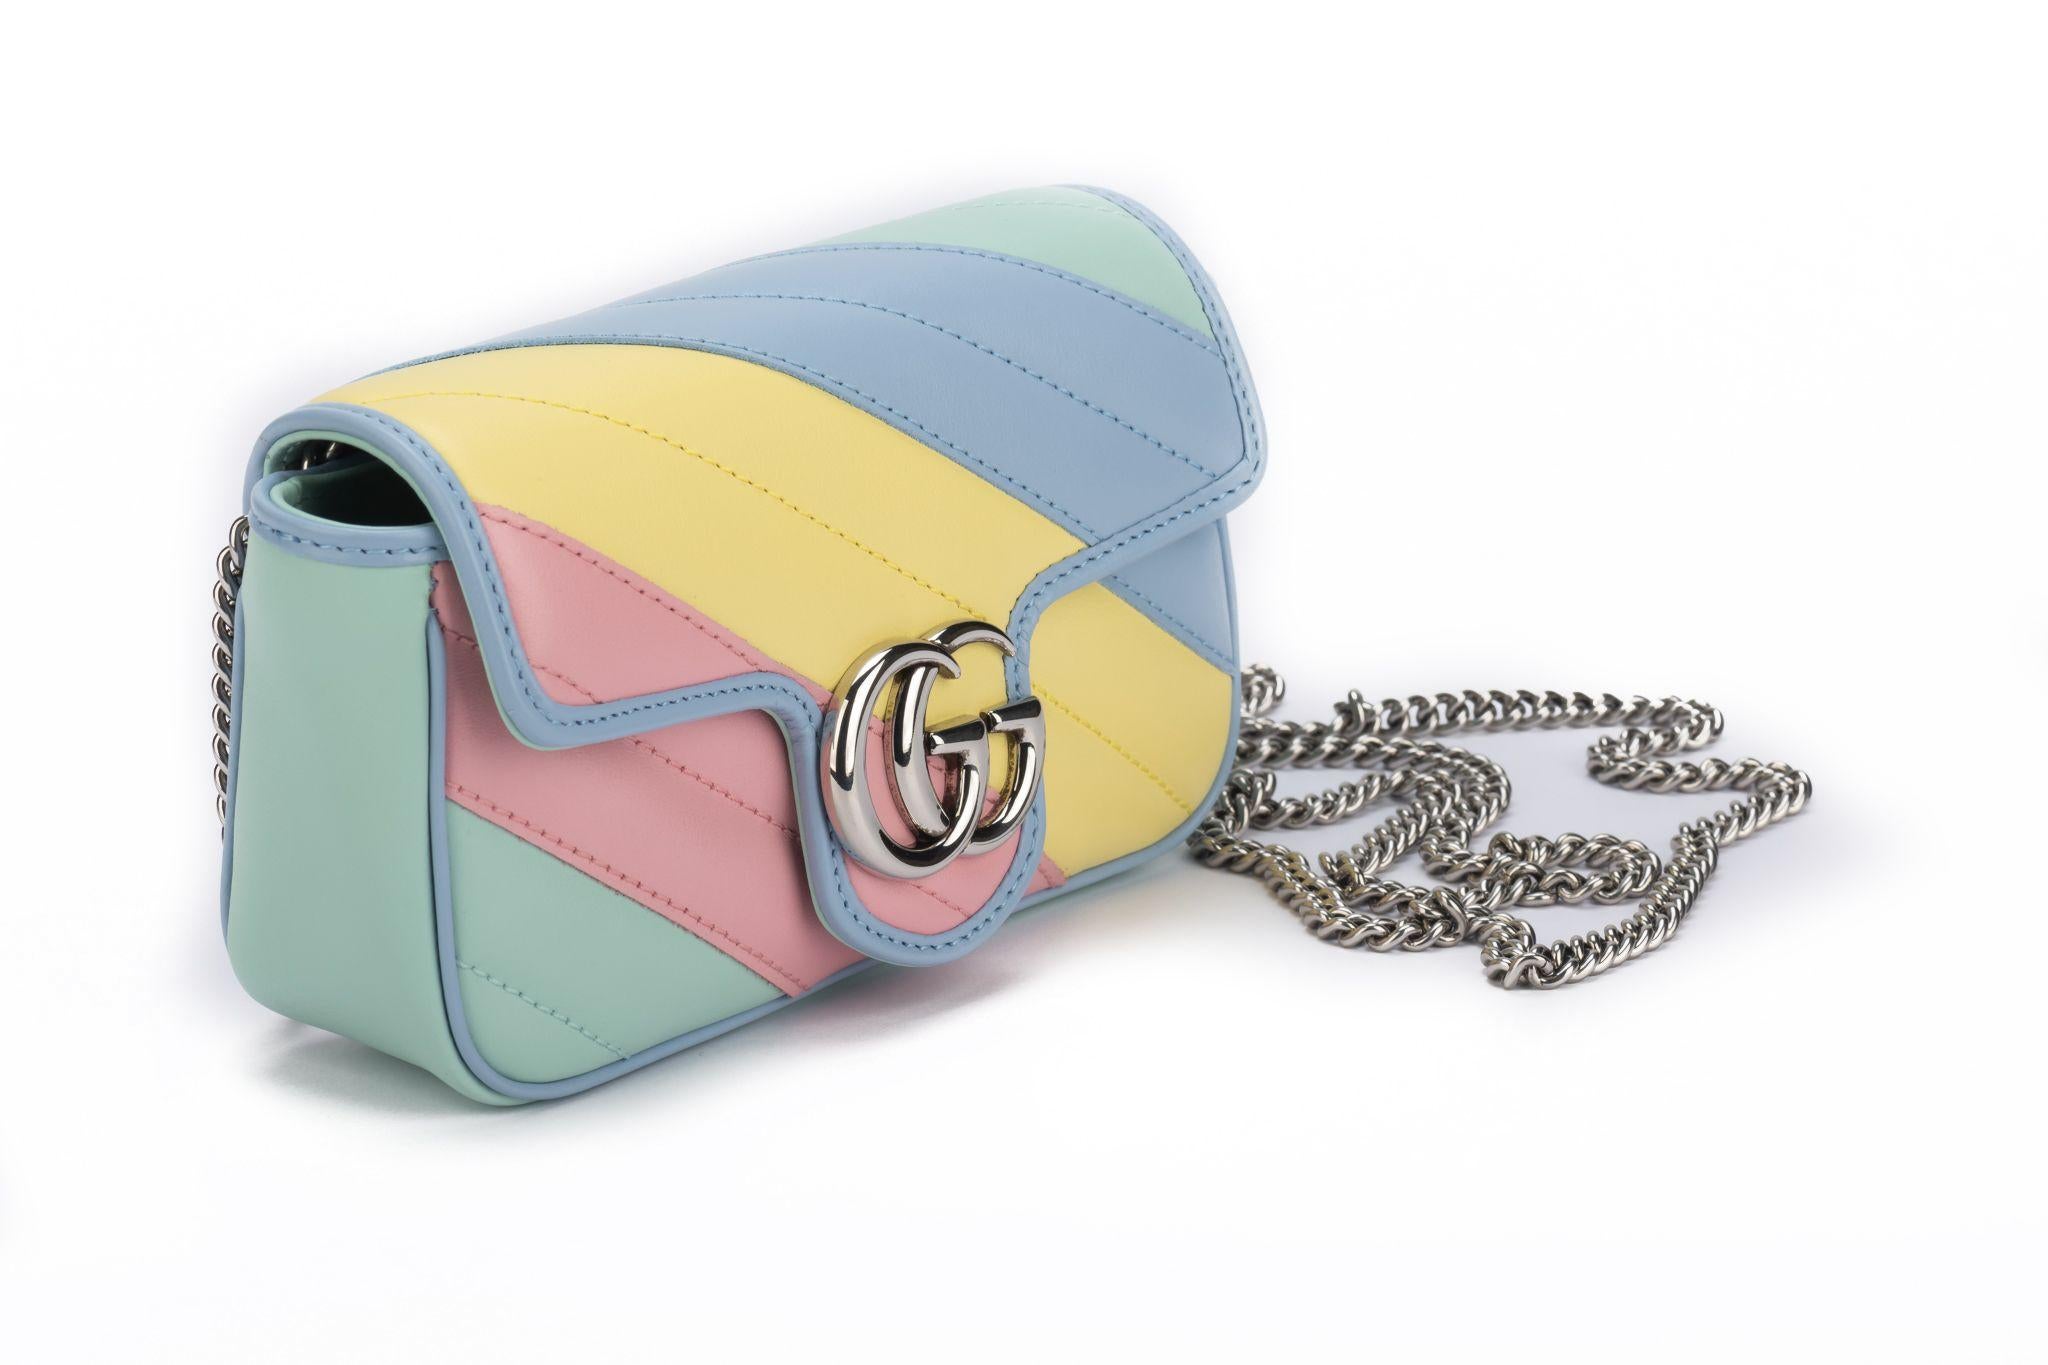 Gucci new in box limited edition rainbow small Marmont Cross body bag . Couleurs pastel et quilting diagonal. Chaîne d'épaule amovible en argent, longueur de 23